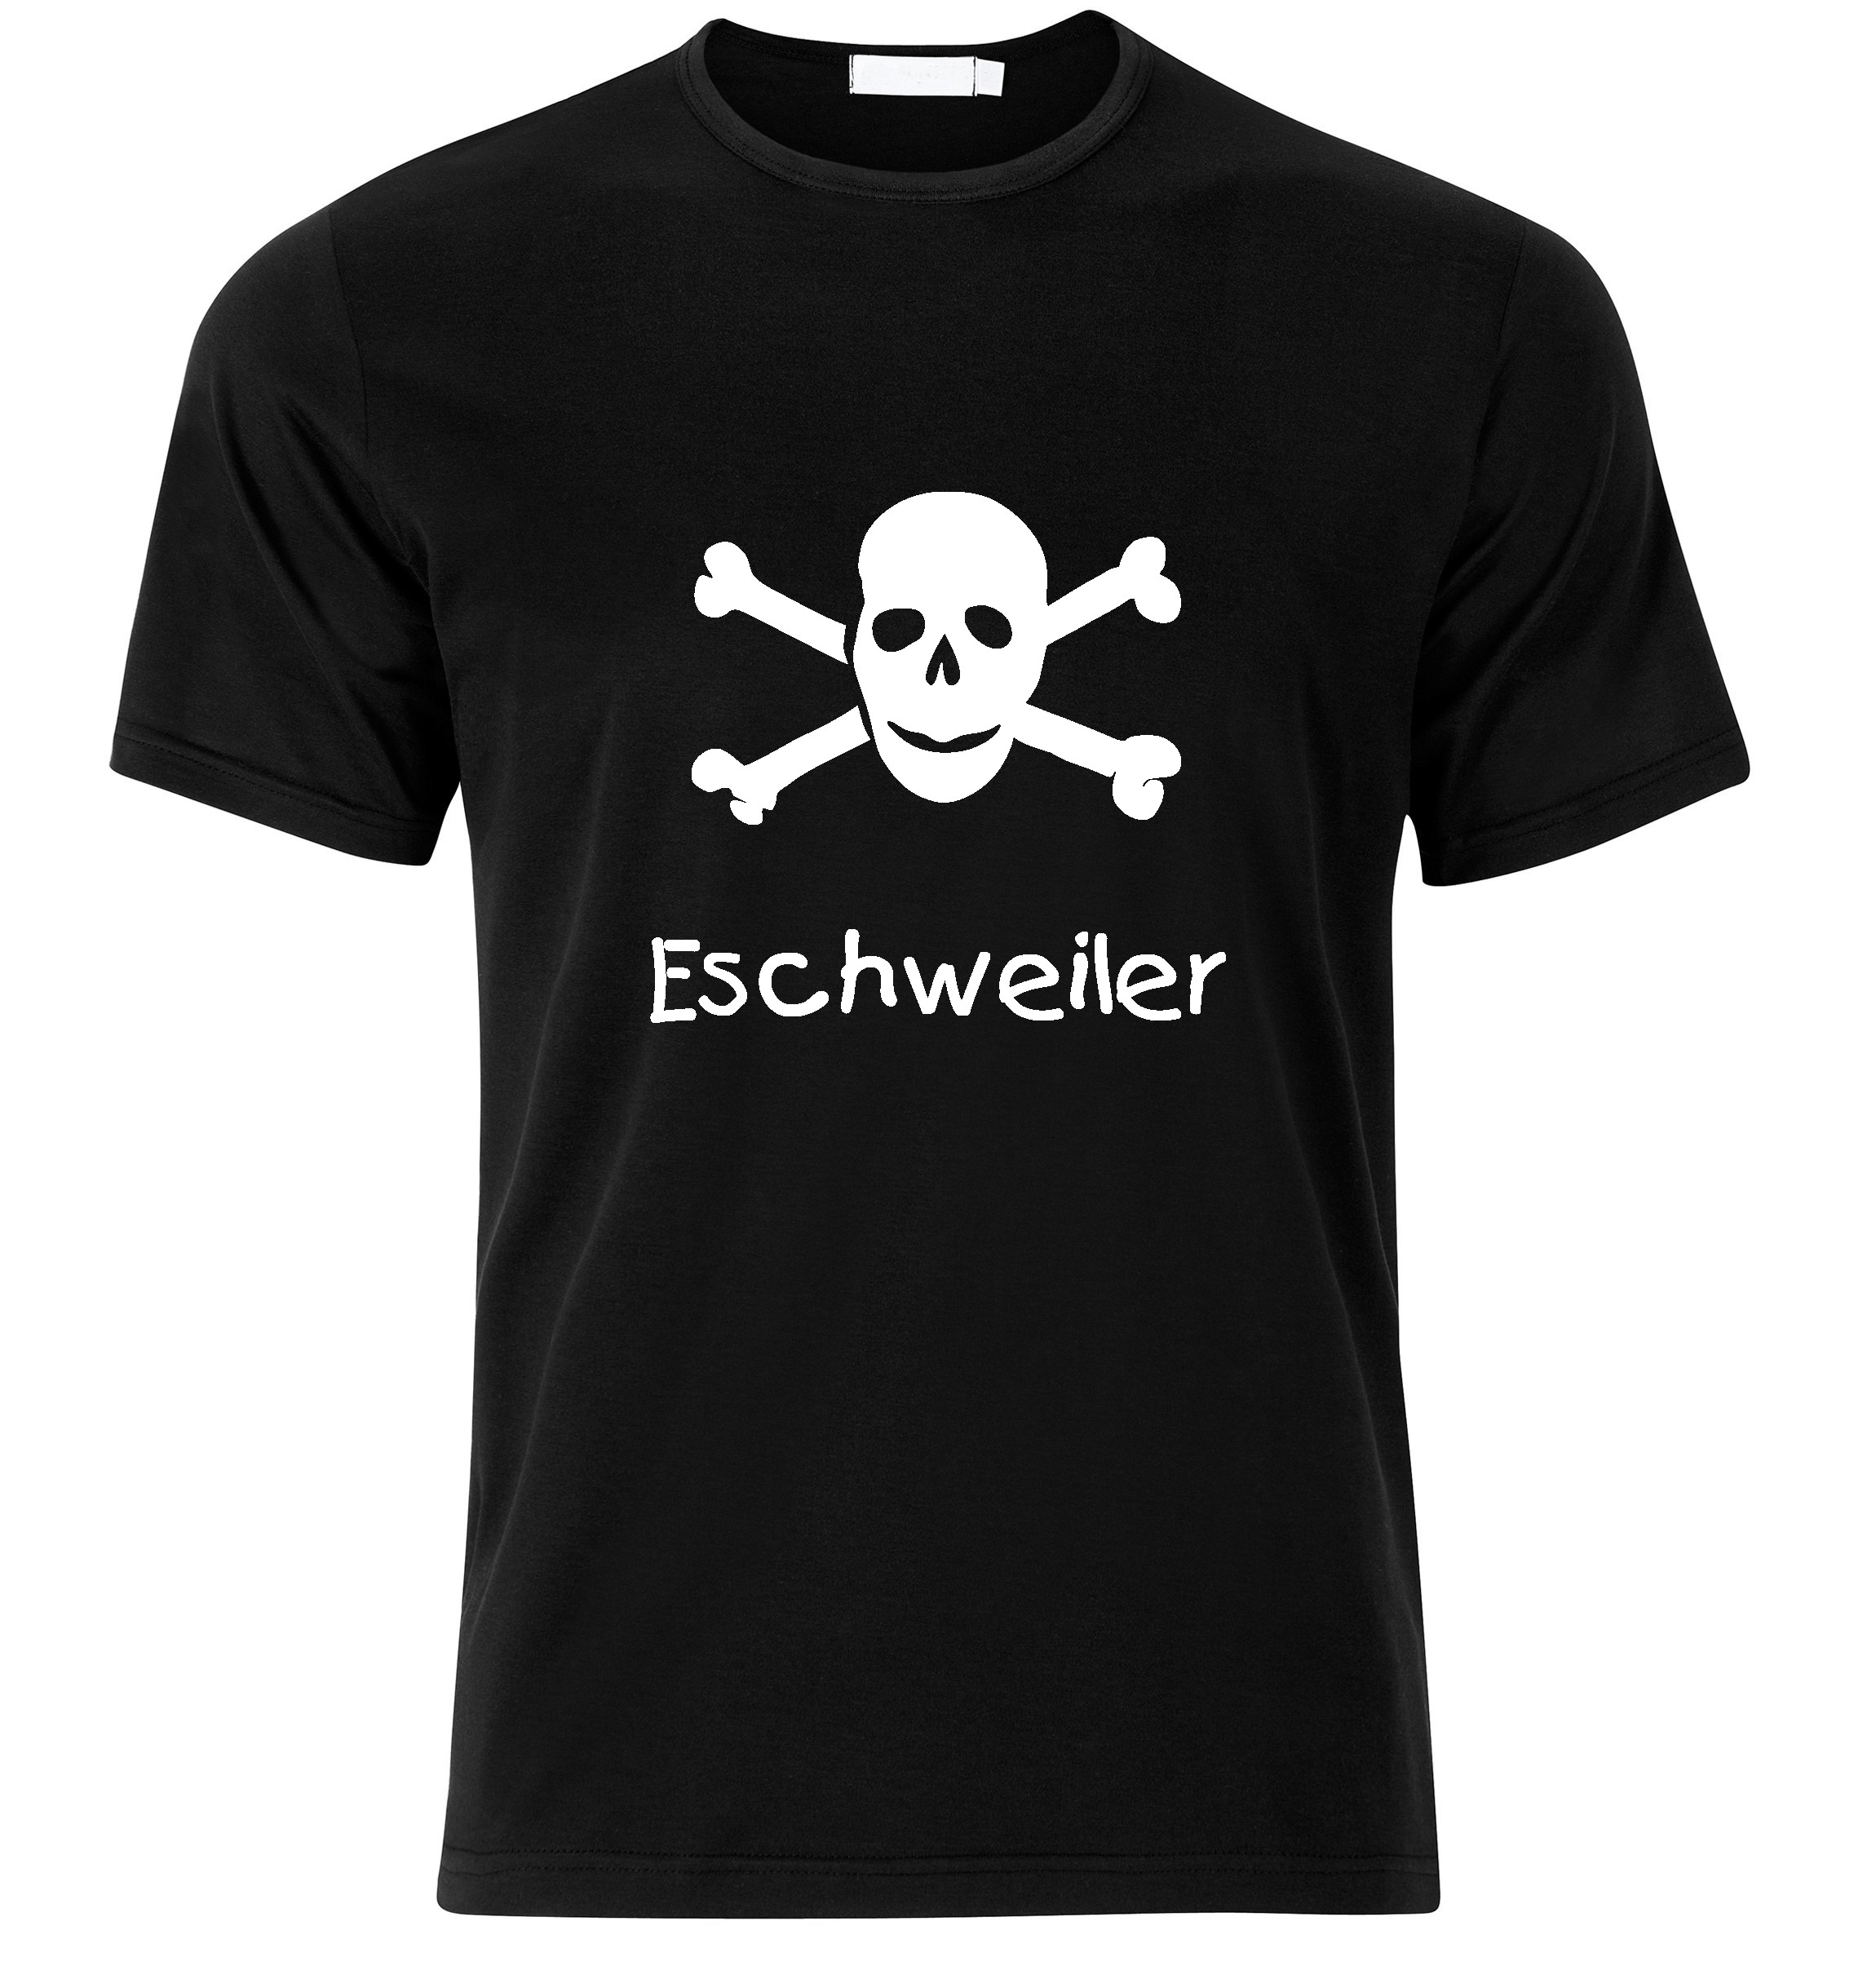 T-Shirt Eschweiler Jolly Roger, Totenkopf